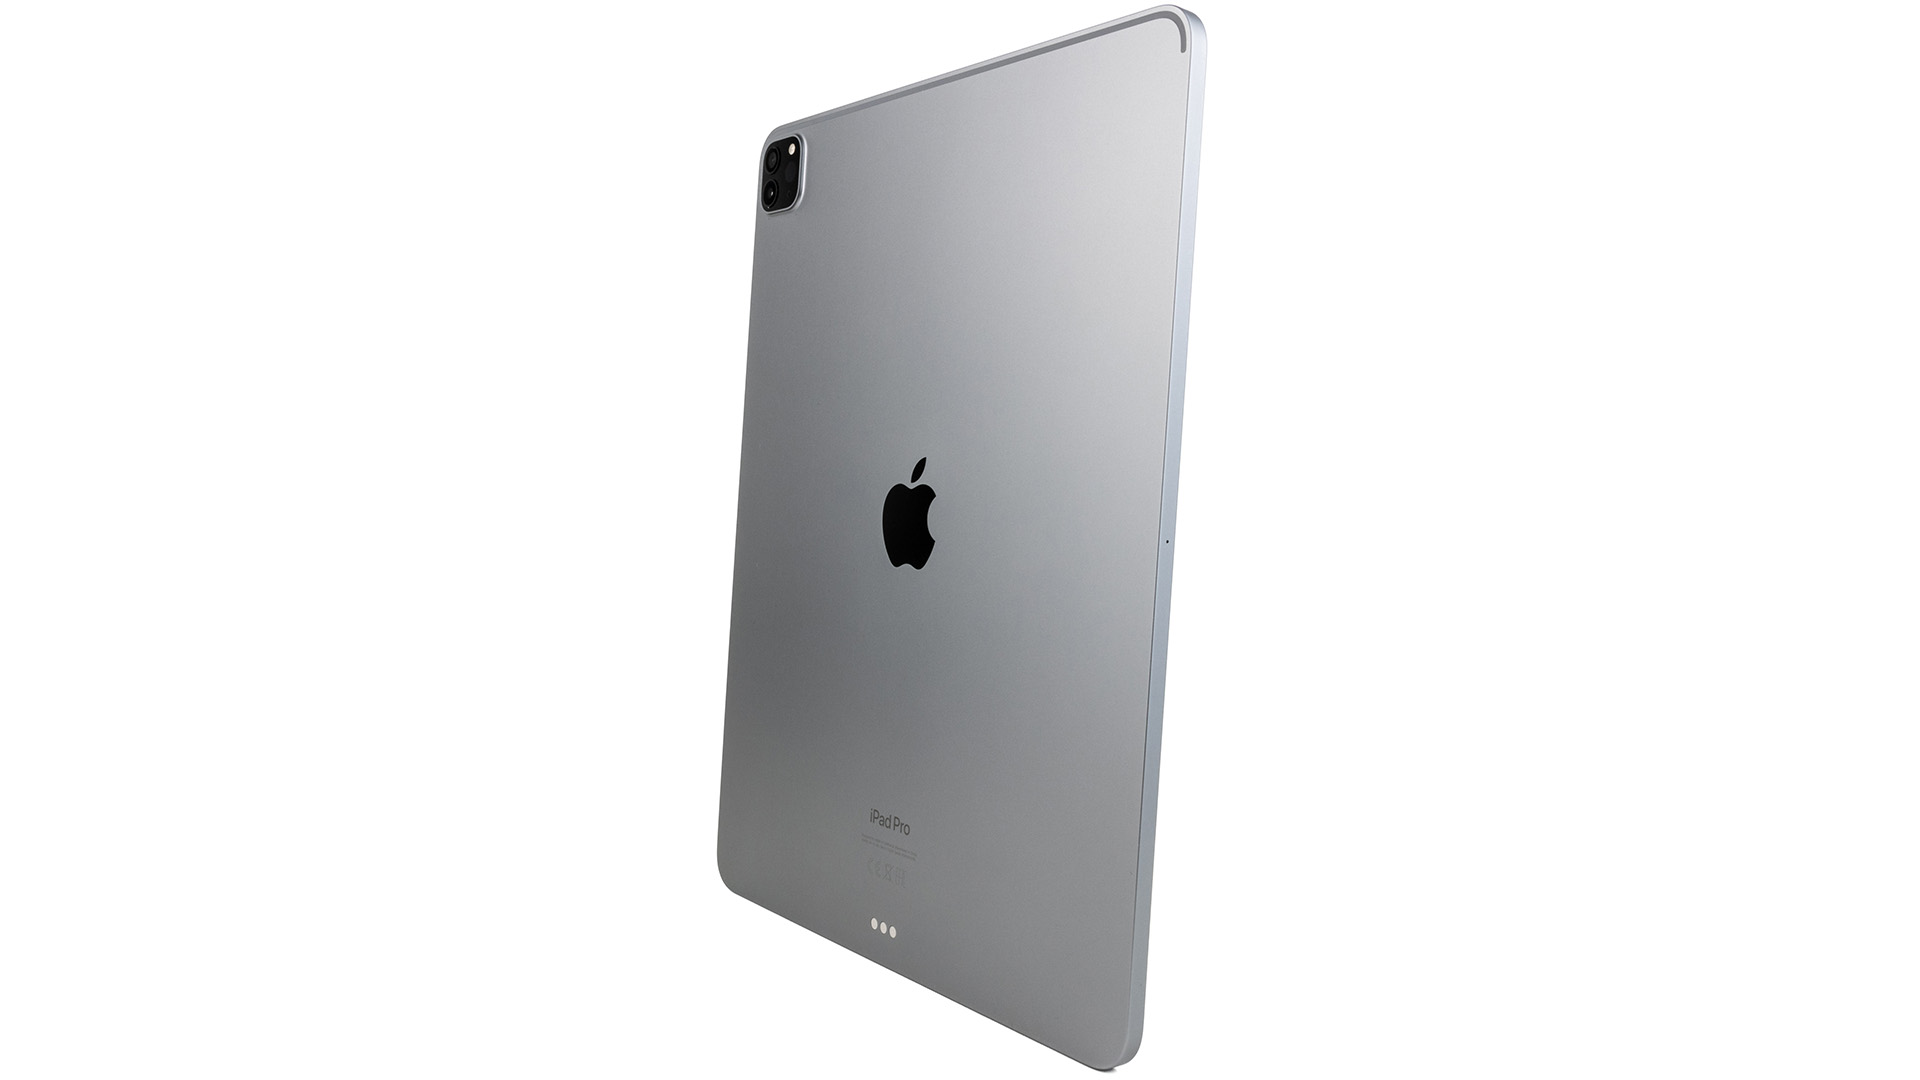 Bon plan : l'iPad Pro 11 pouces 256 Go à moins de 950 euros